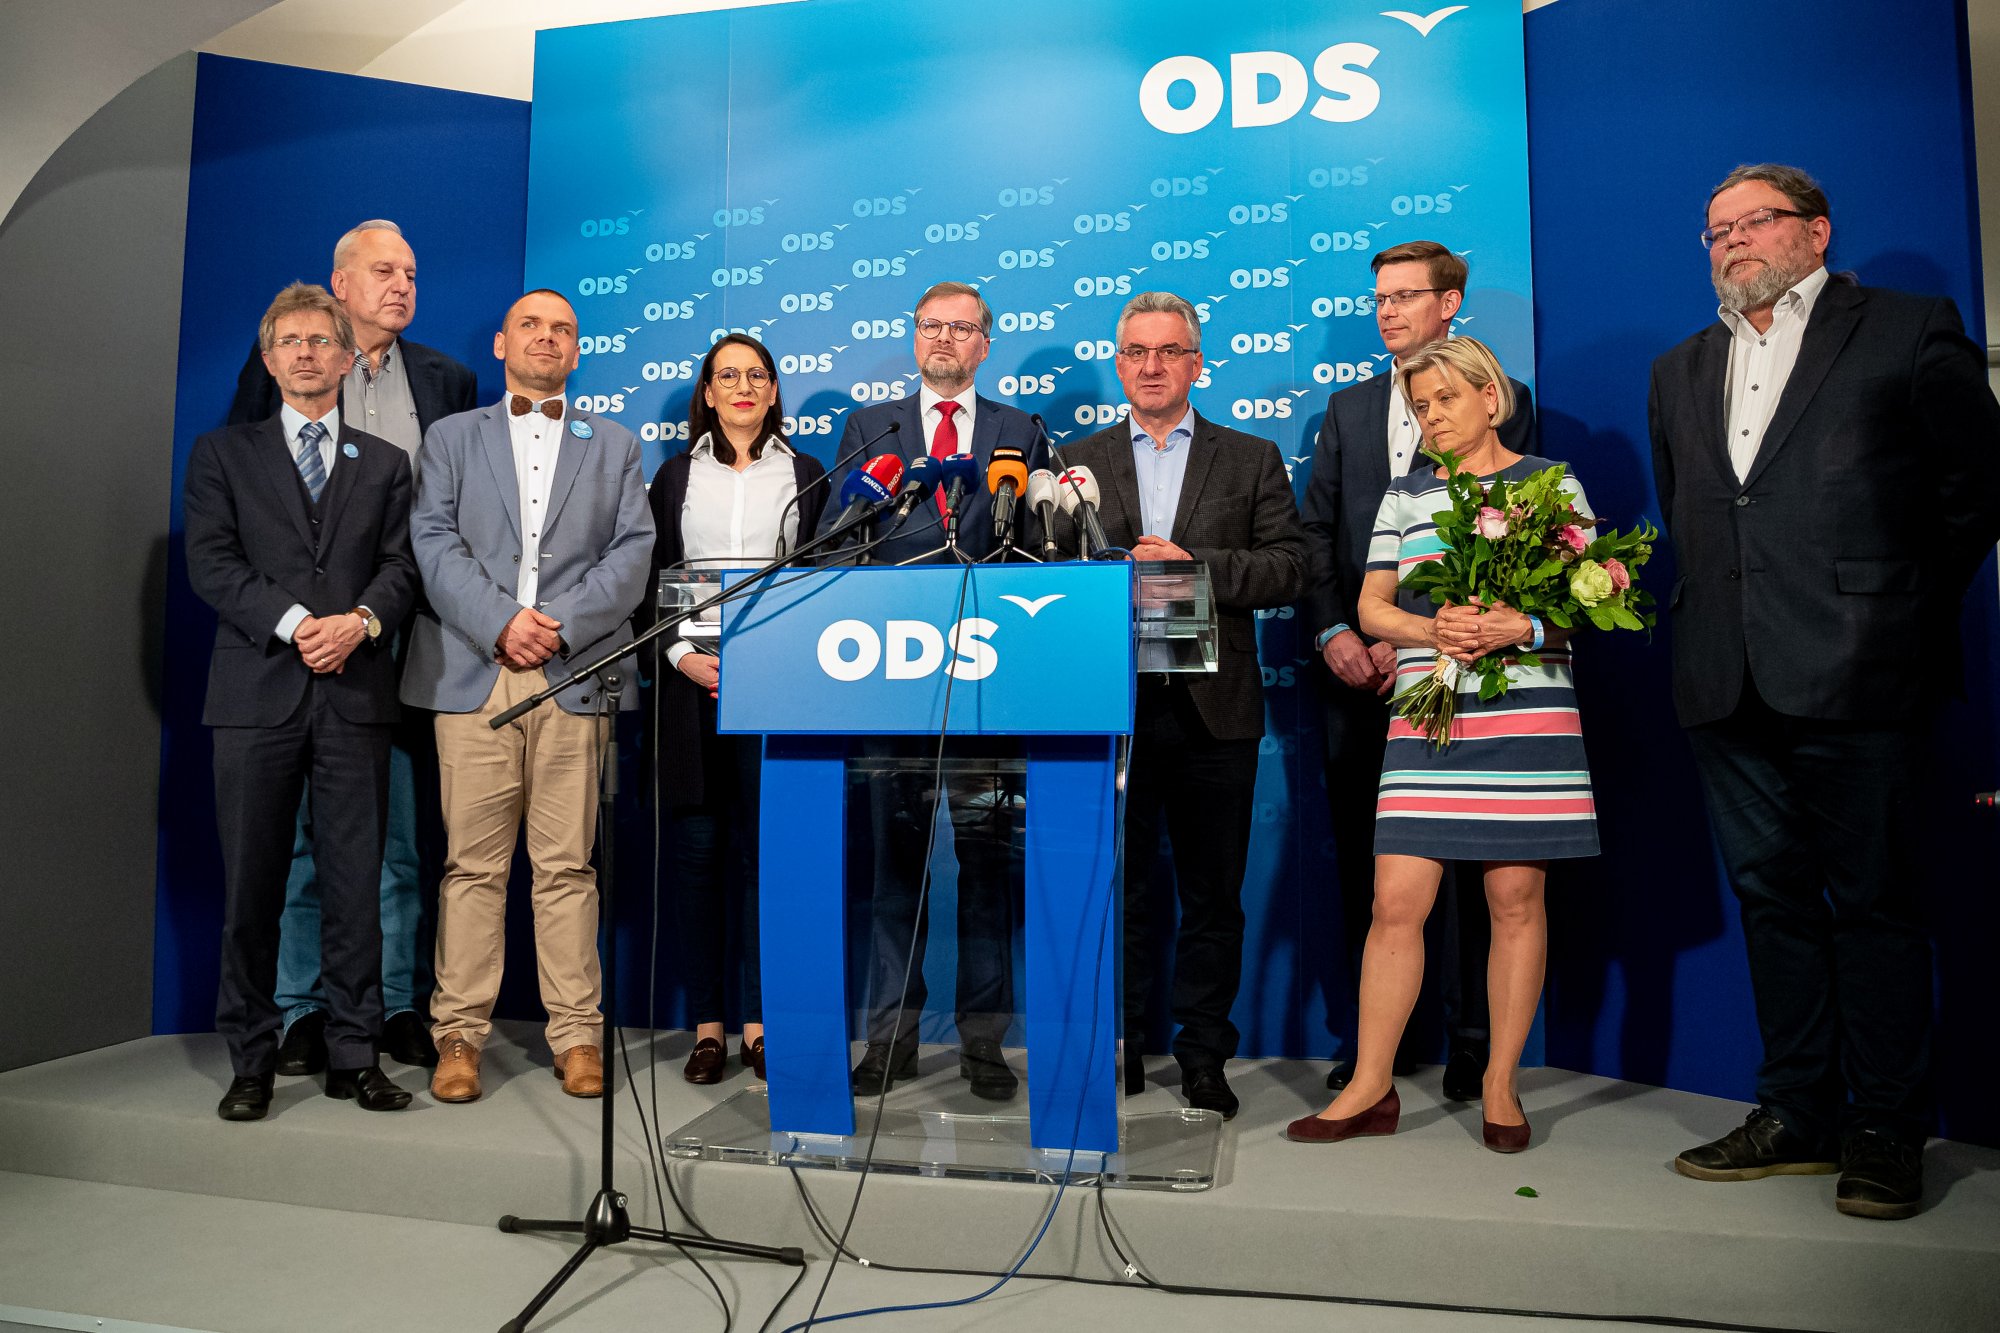 ODS: Děkujeme, že jste svým hlasem podpořili kandidáty ODS. Díky Vašemu hlasu budou zájmy České republiky v Bruselu slyšet!